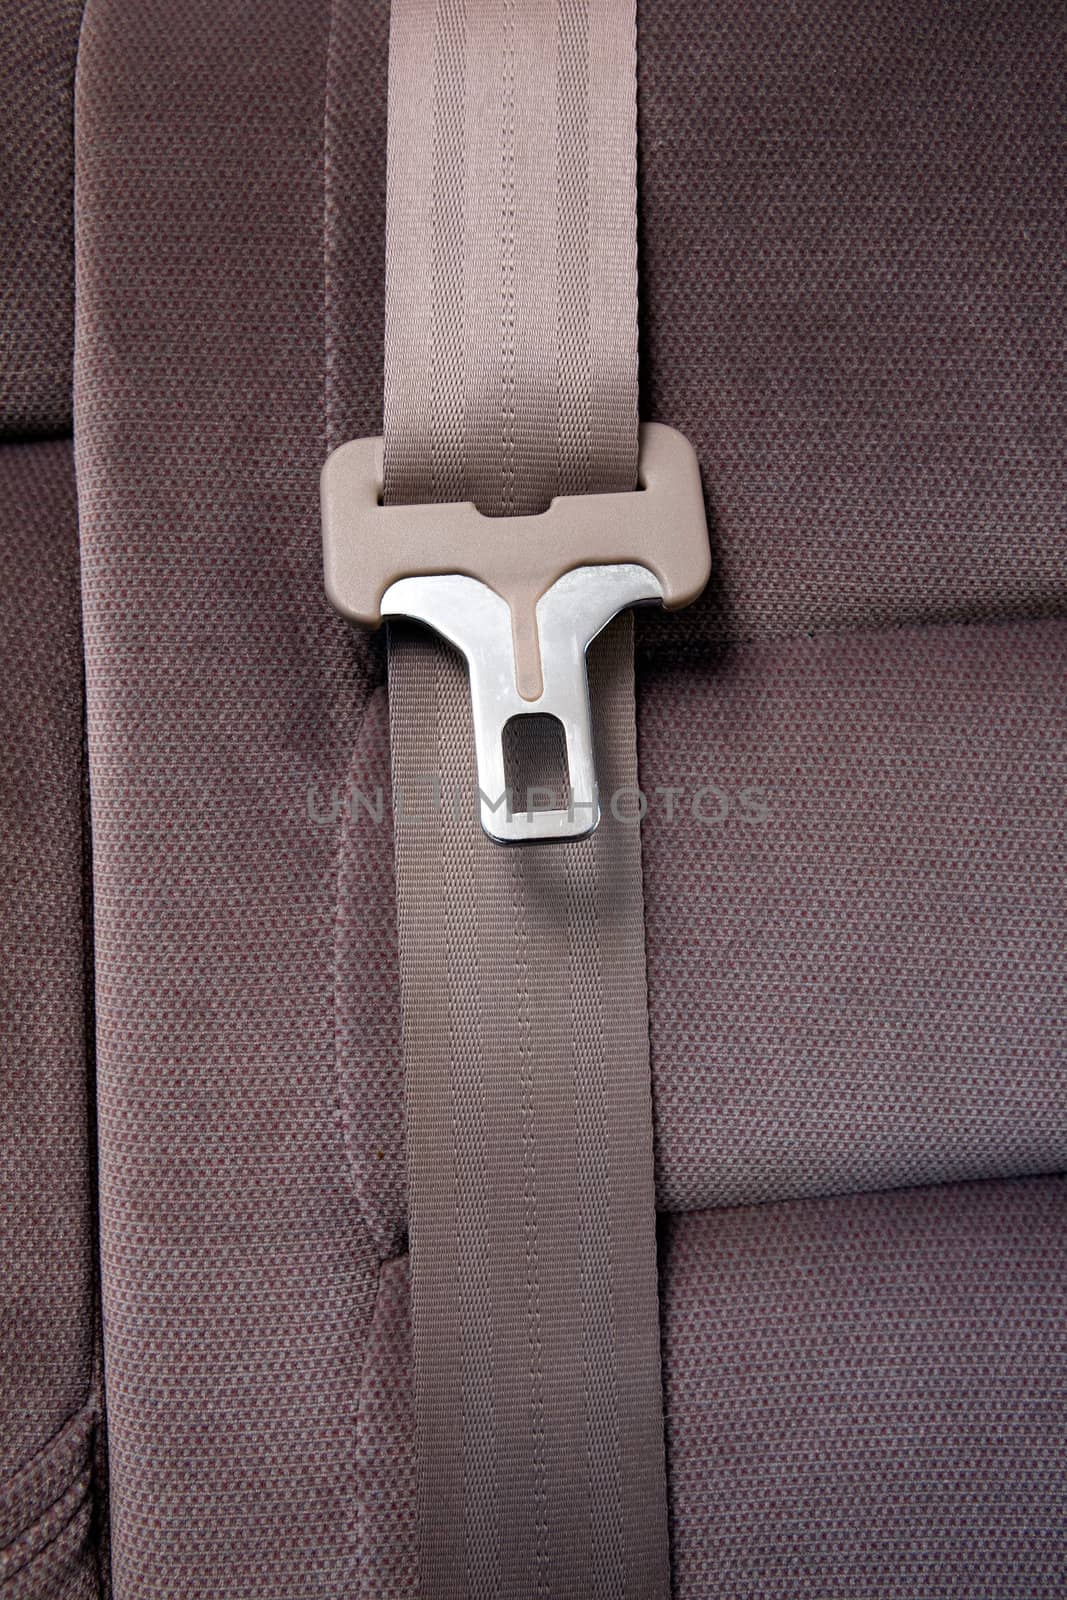 Seatbelt in Car by leaf